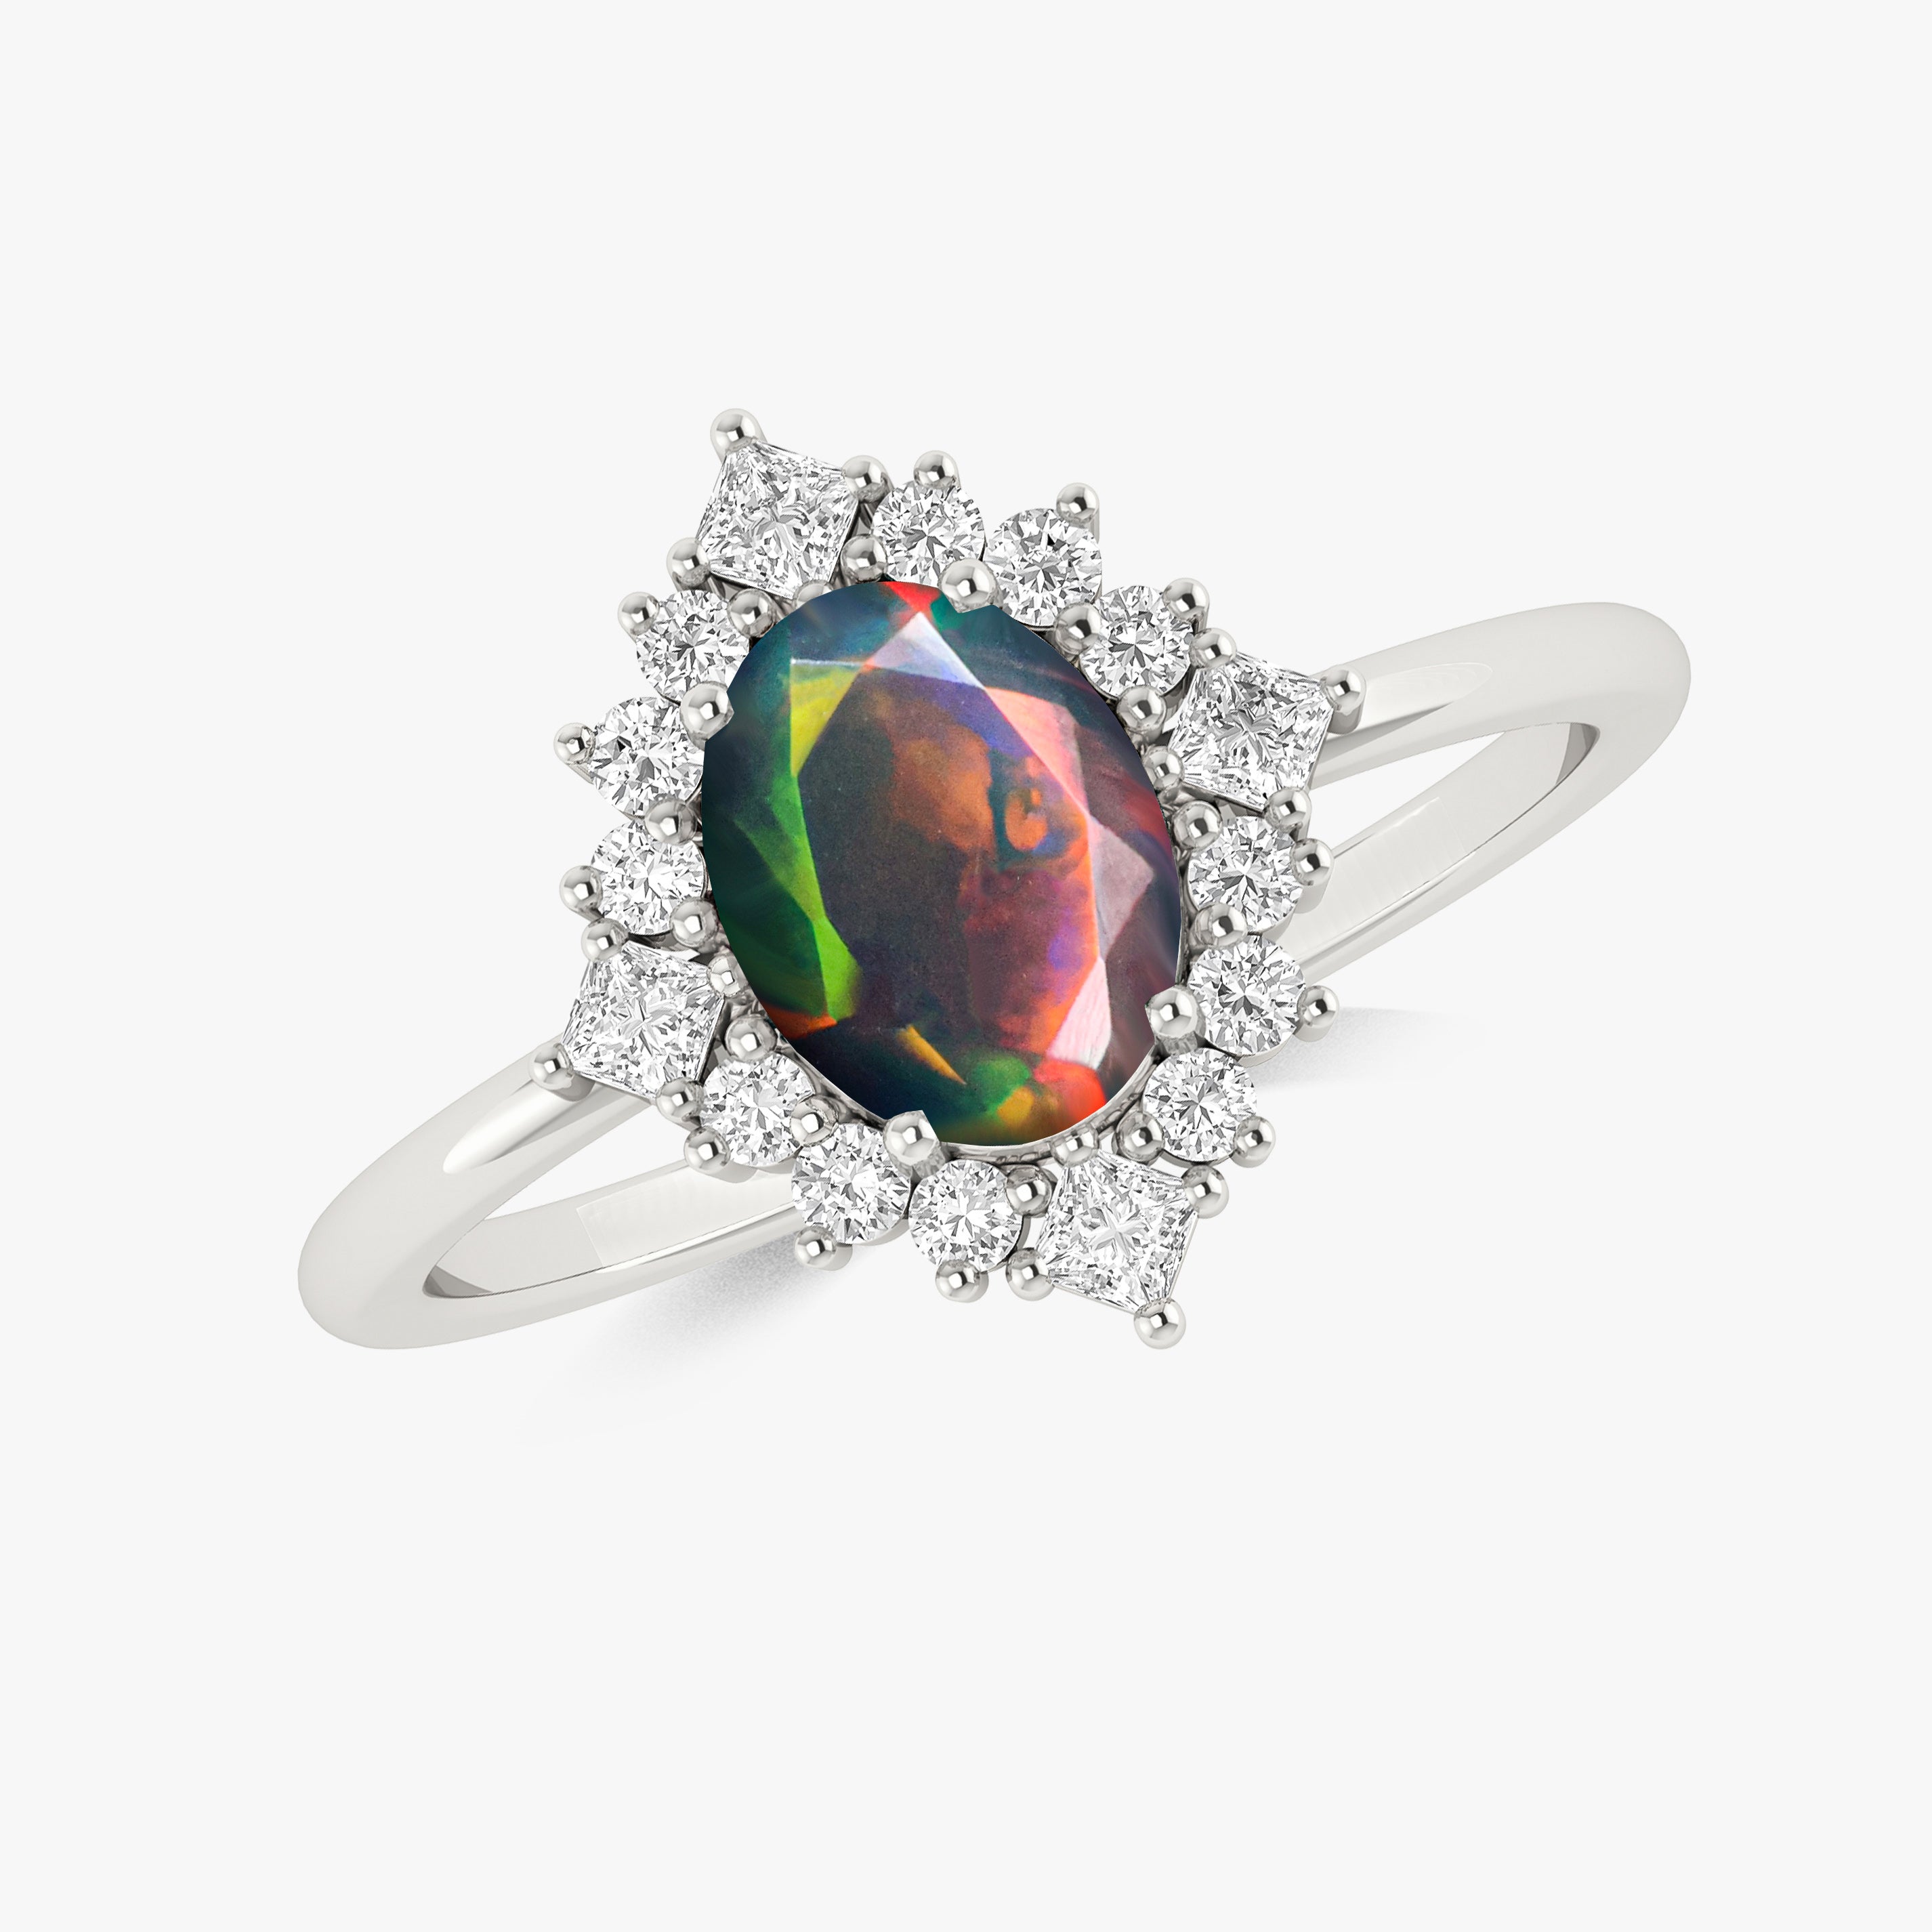 Buy Black Opal Ring Online